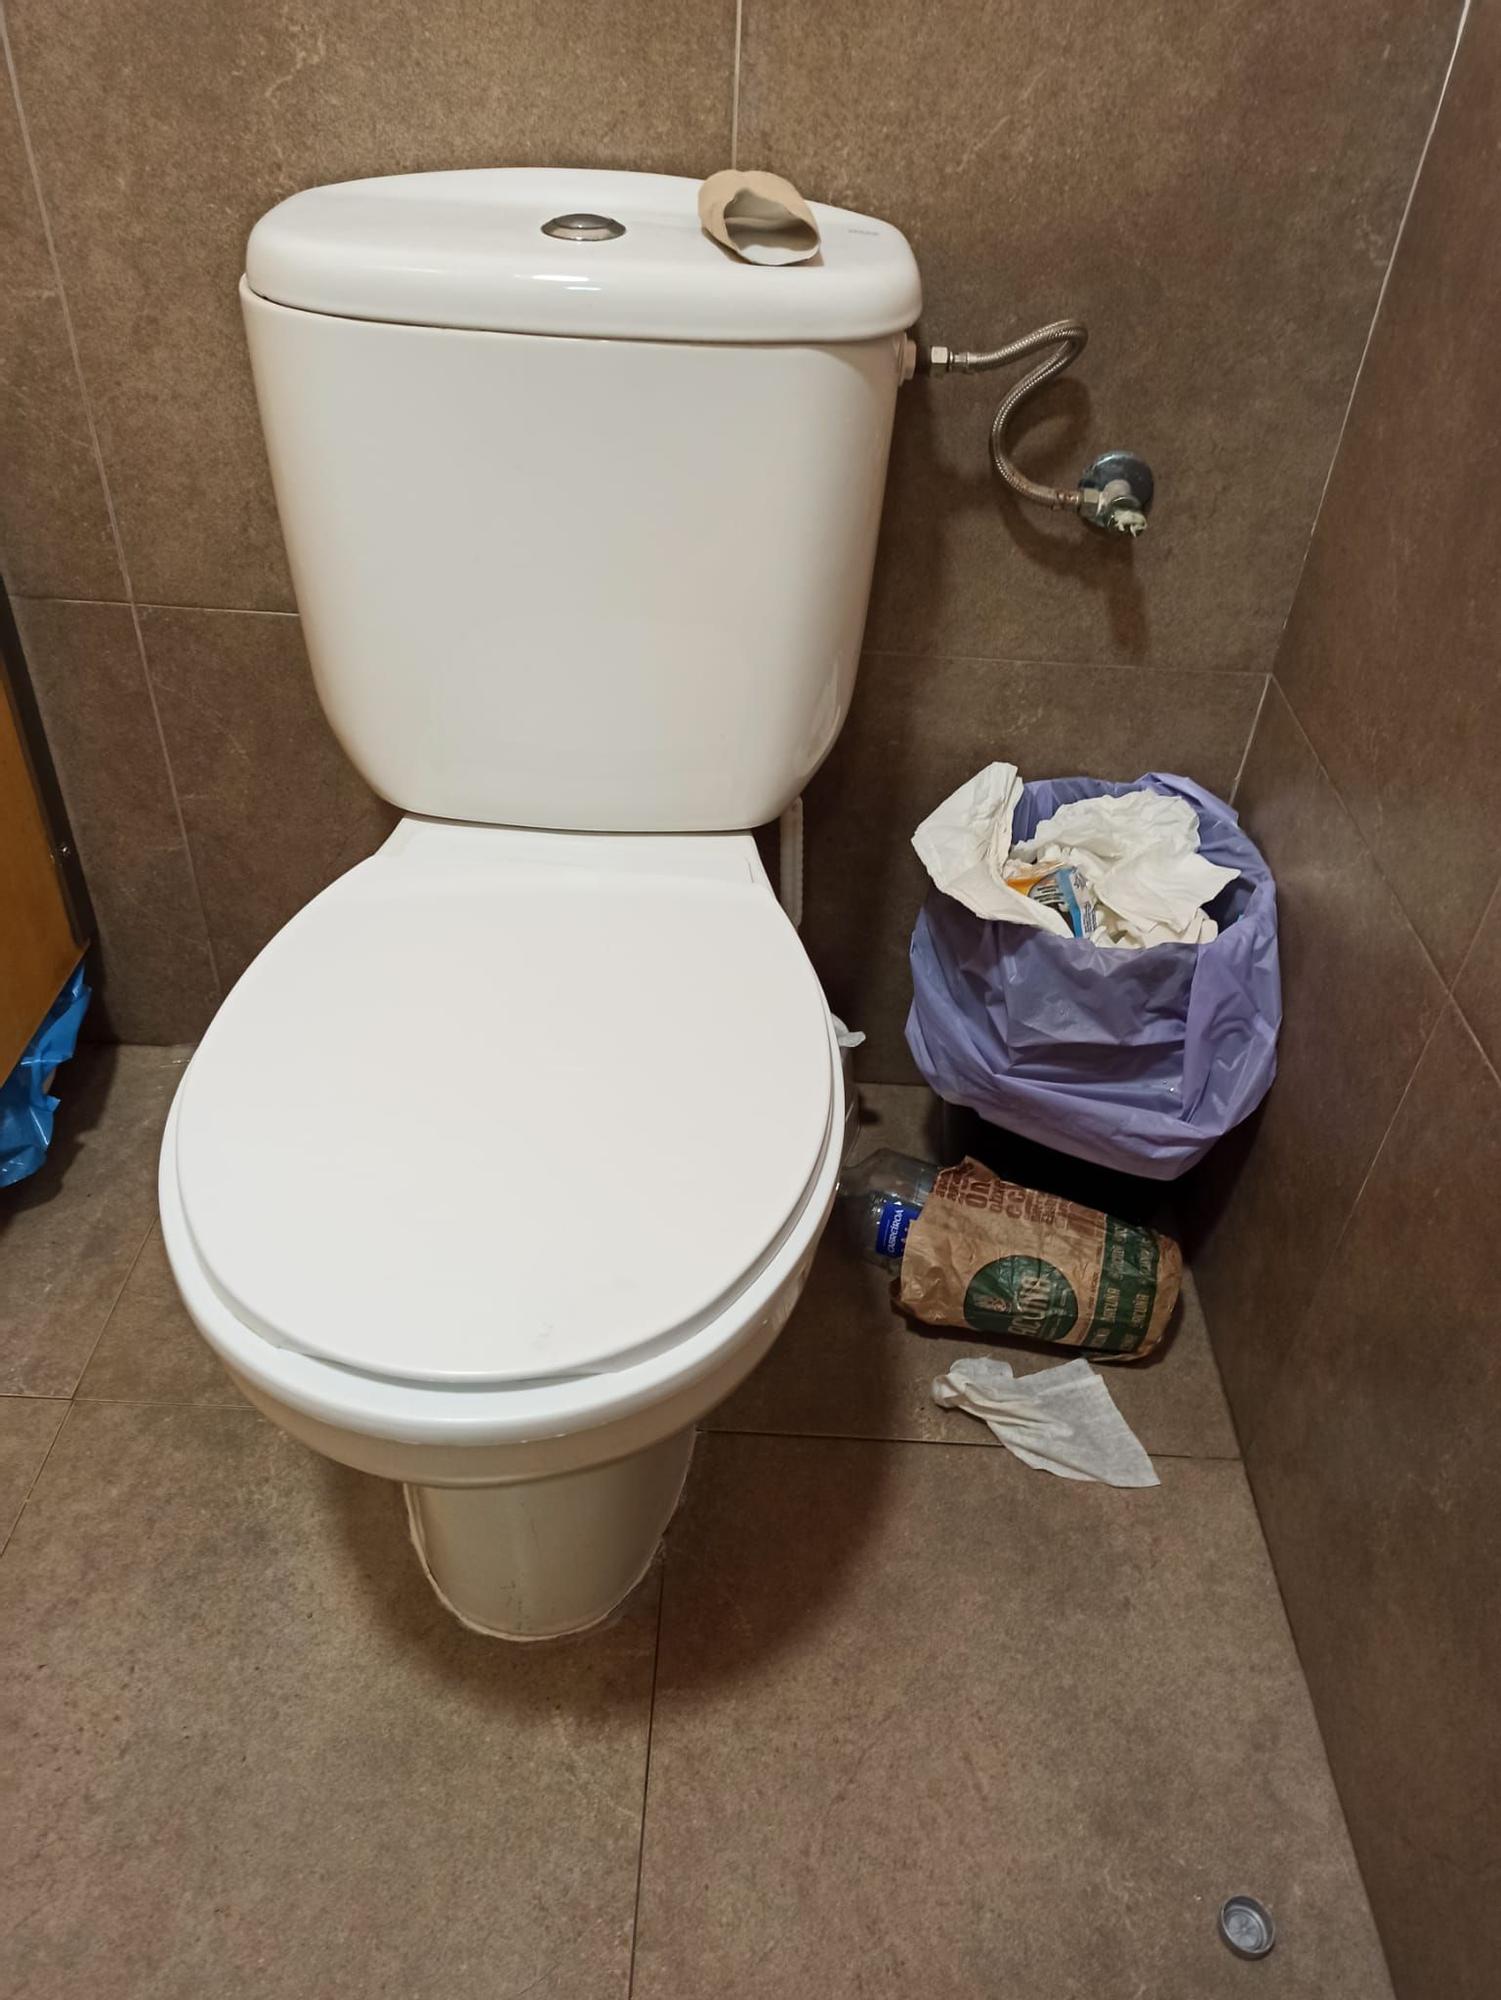 Los usuarios denuncian que los baños no se limpian ni se recogen.